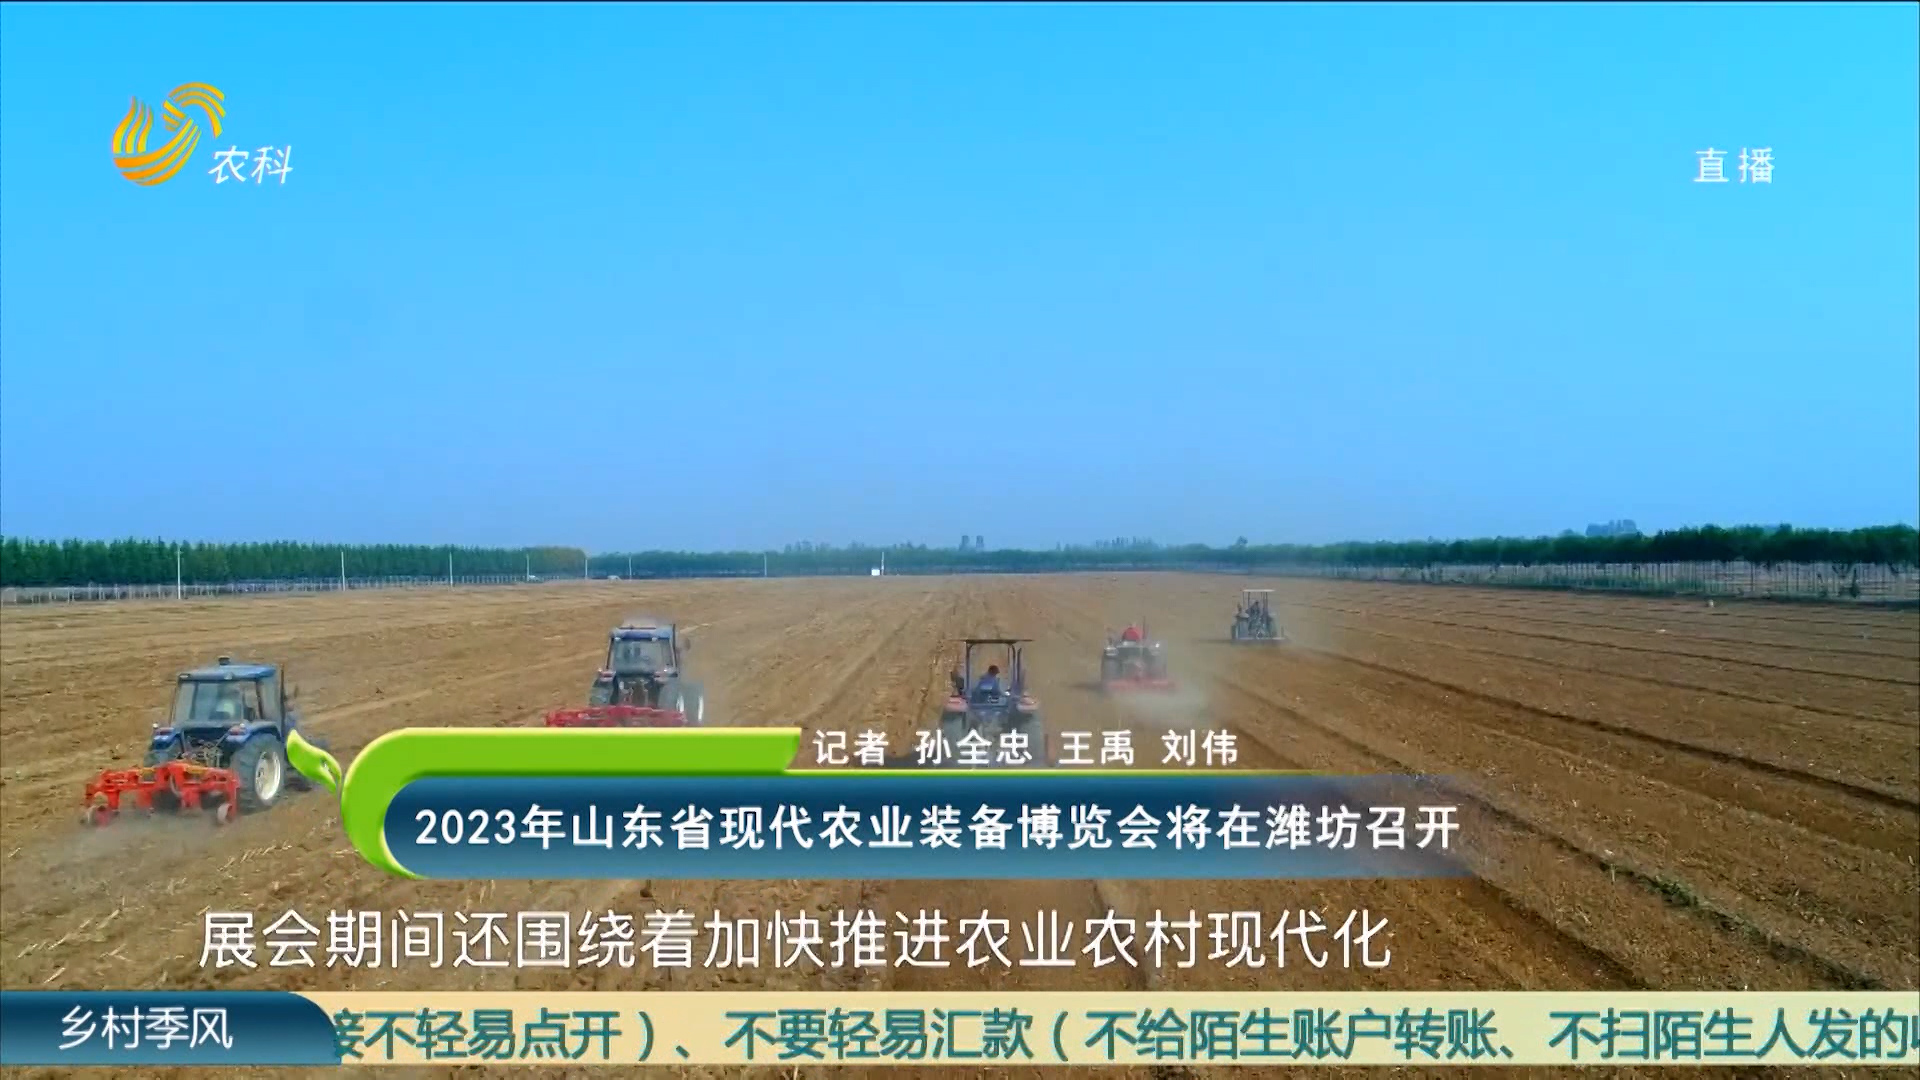 2023年山东省现代农业装备博览会将在潍坊召开